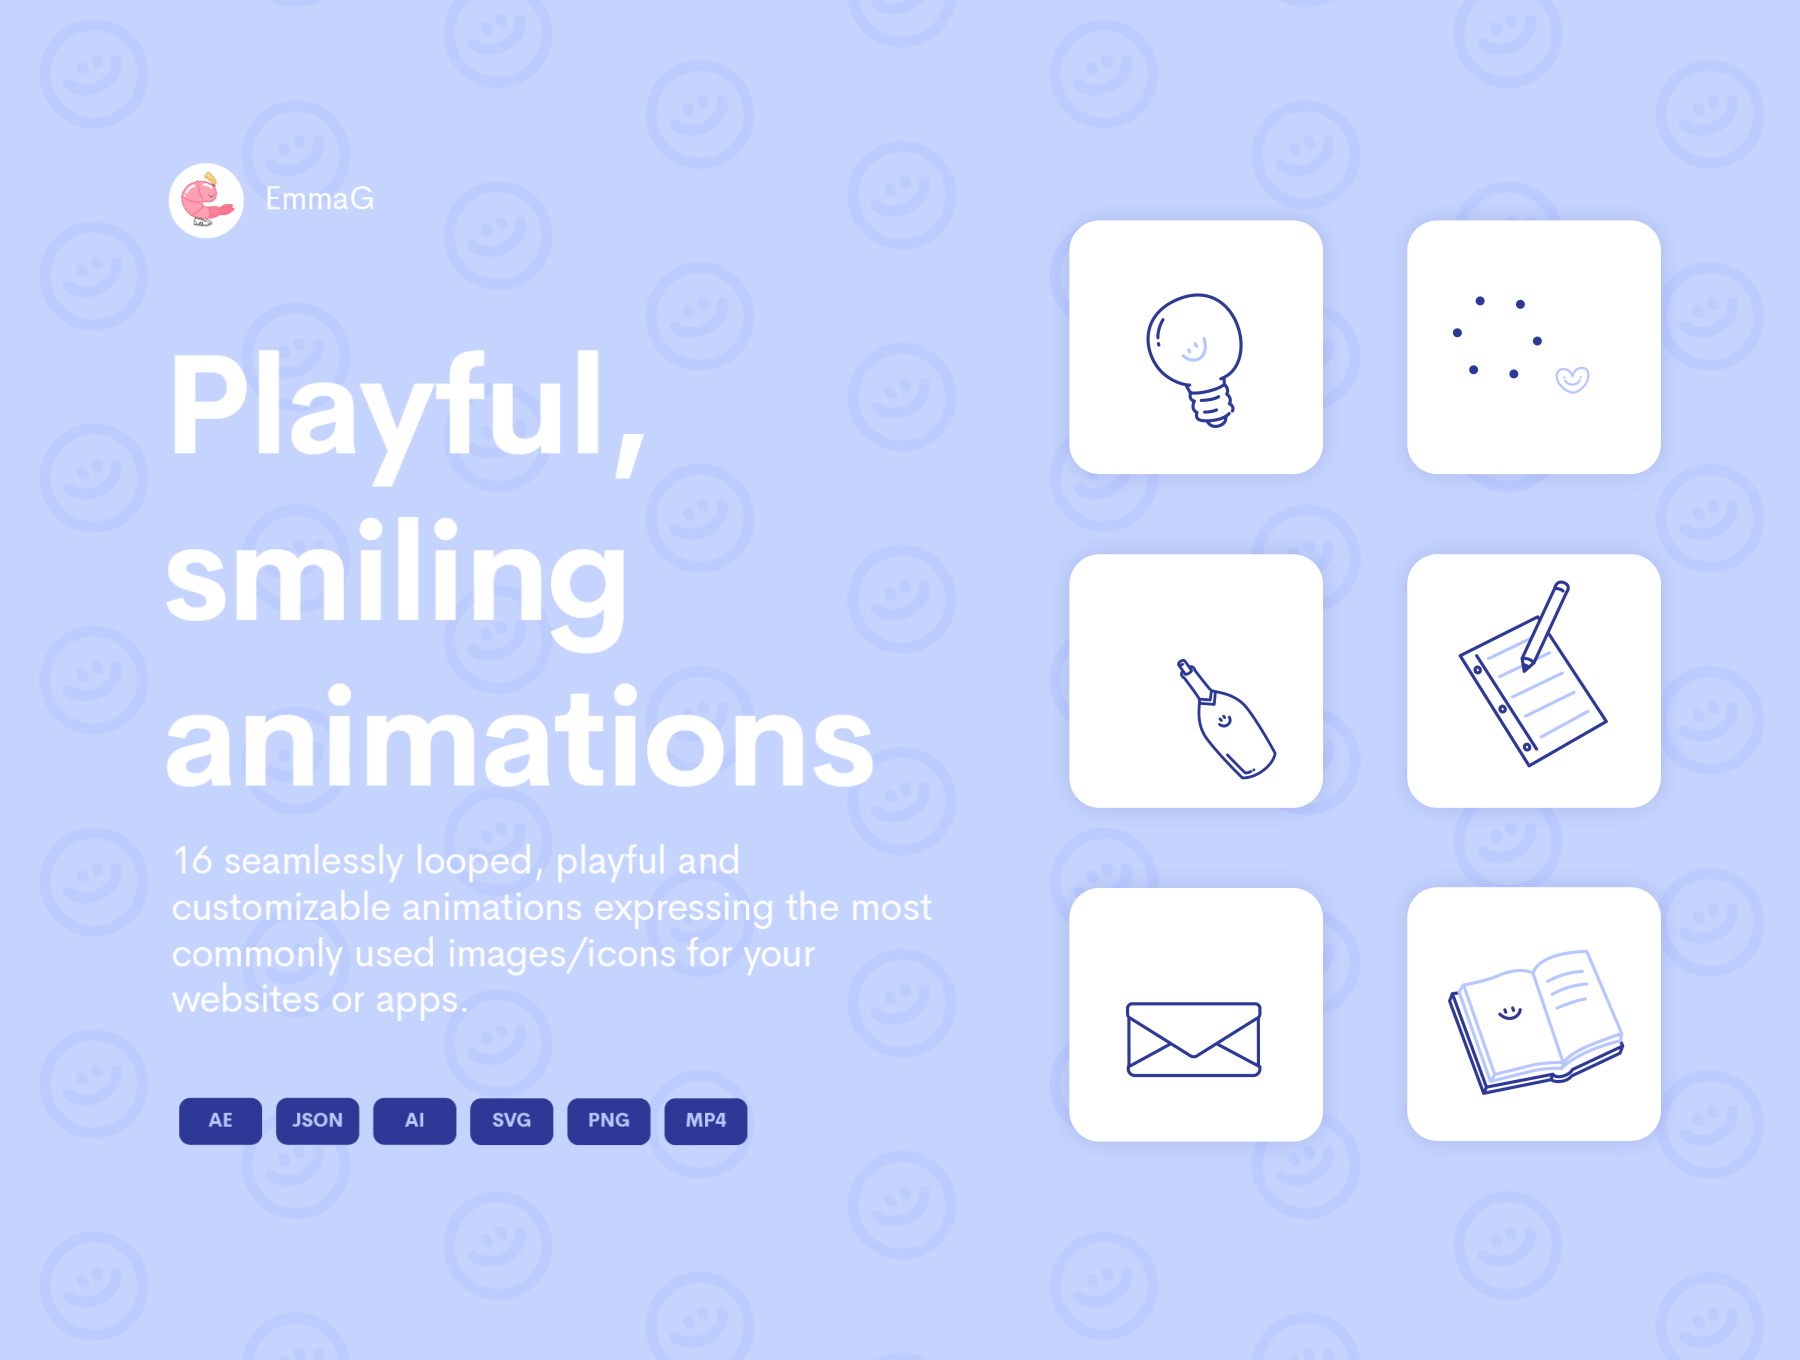 16款开心趣味动画图标合集 Happy Animated Icons-3D/图标、动画展示、学习生活、插画、插画风格、概念创意、状态页、线条手绘、趣味漫画-到位啦UI